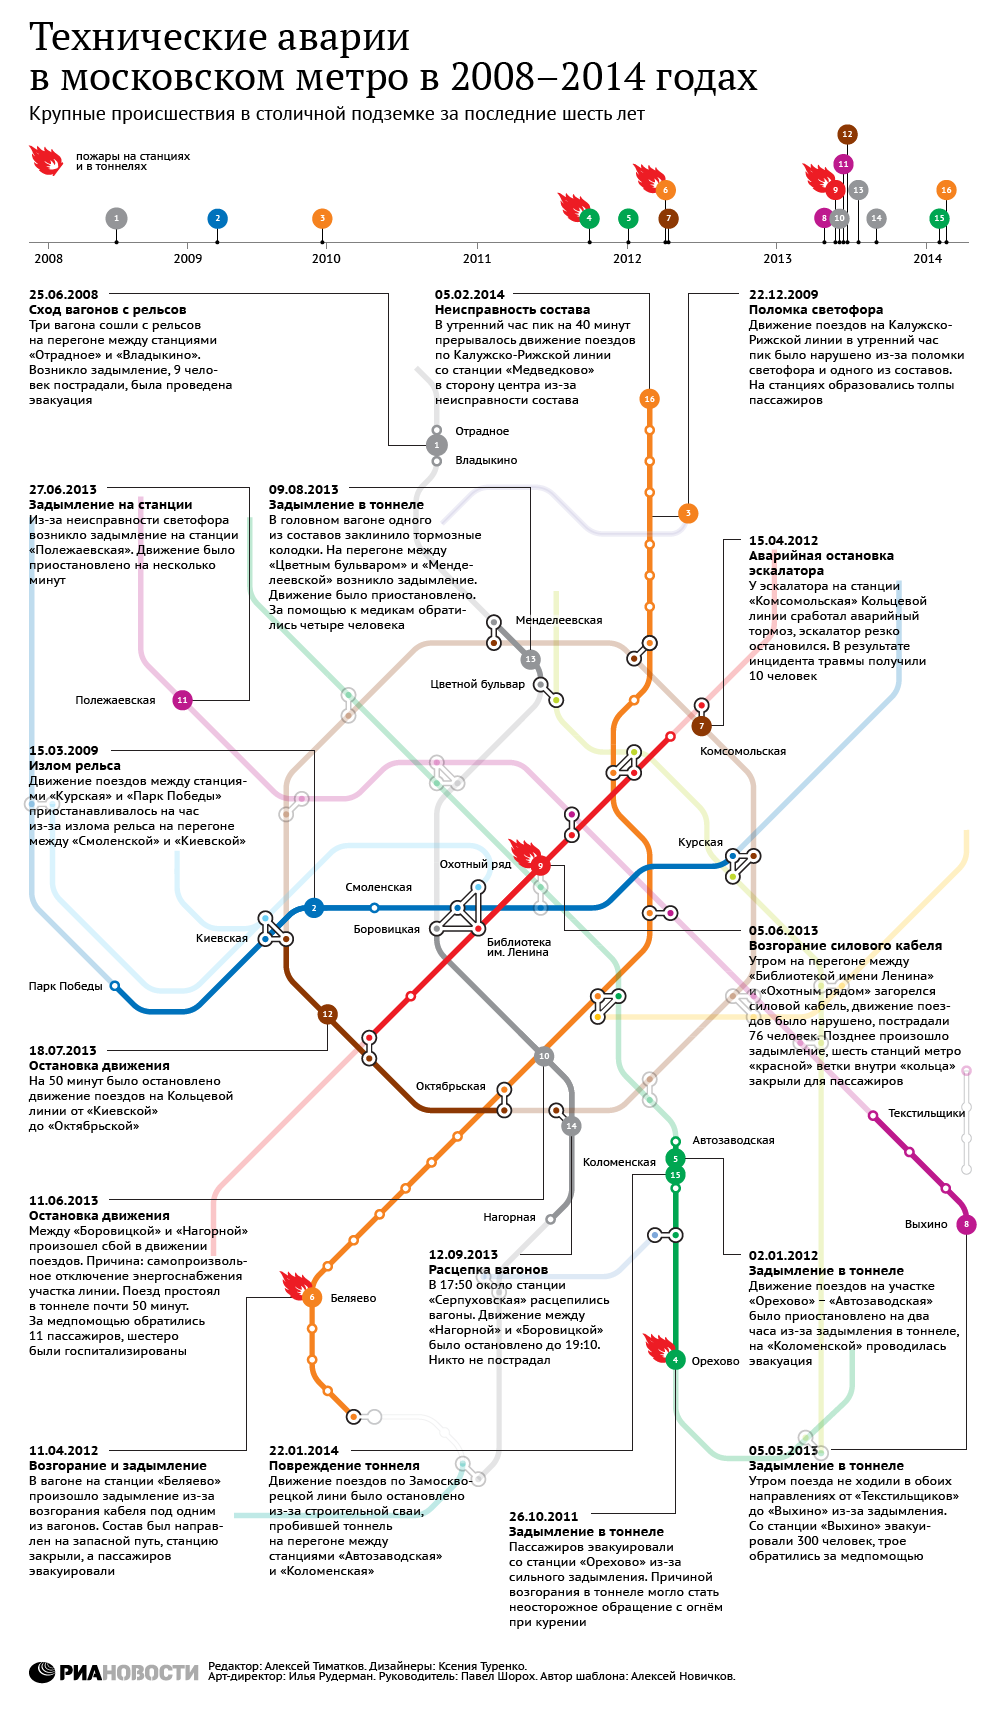 Технические аварии в московском метро в 2008-2014 годах